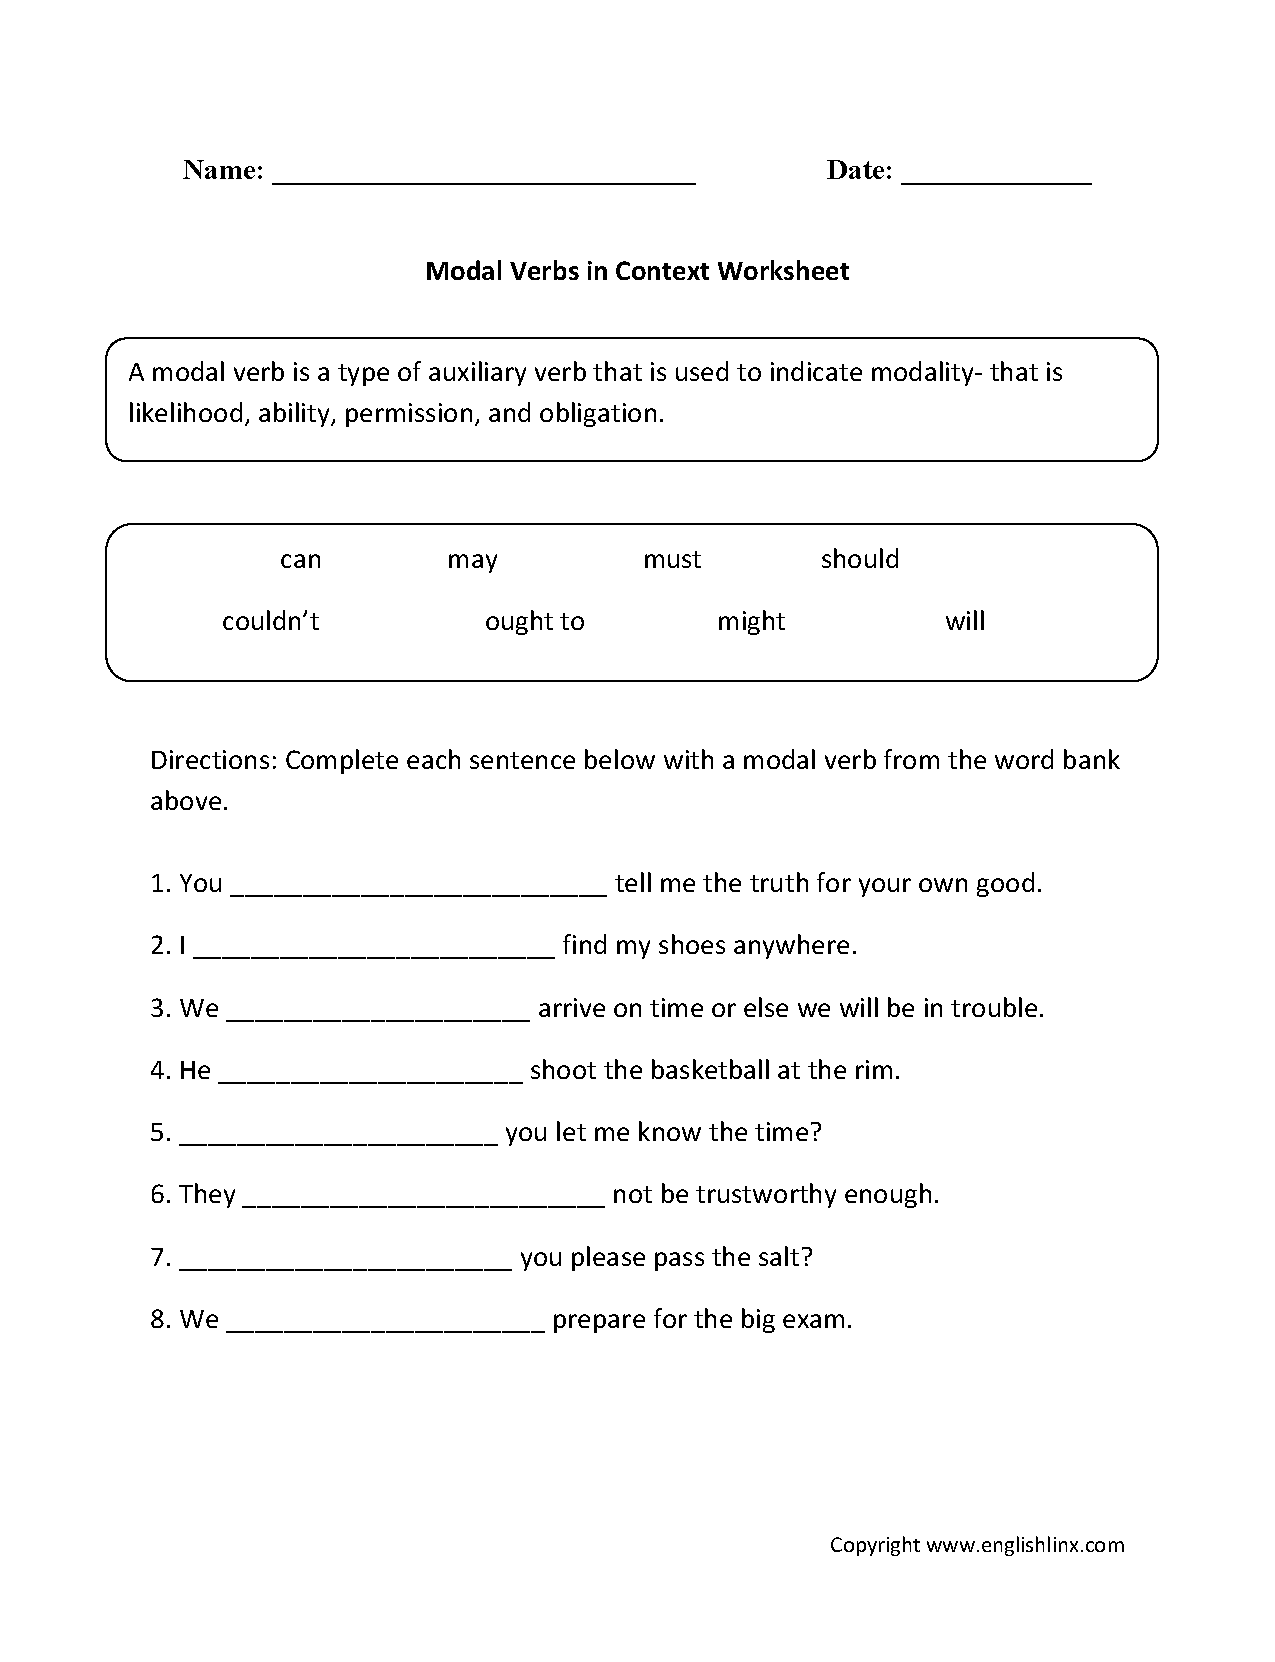 Worksheet Of Modal Verbs For Grade 5